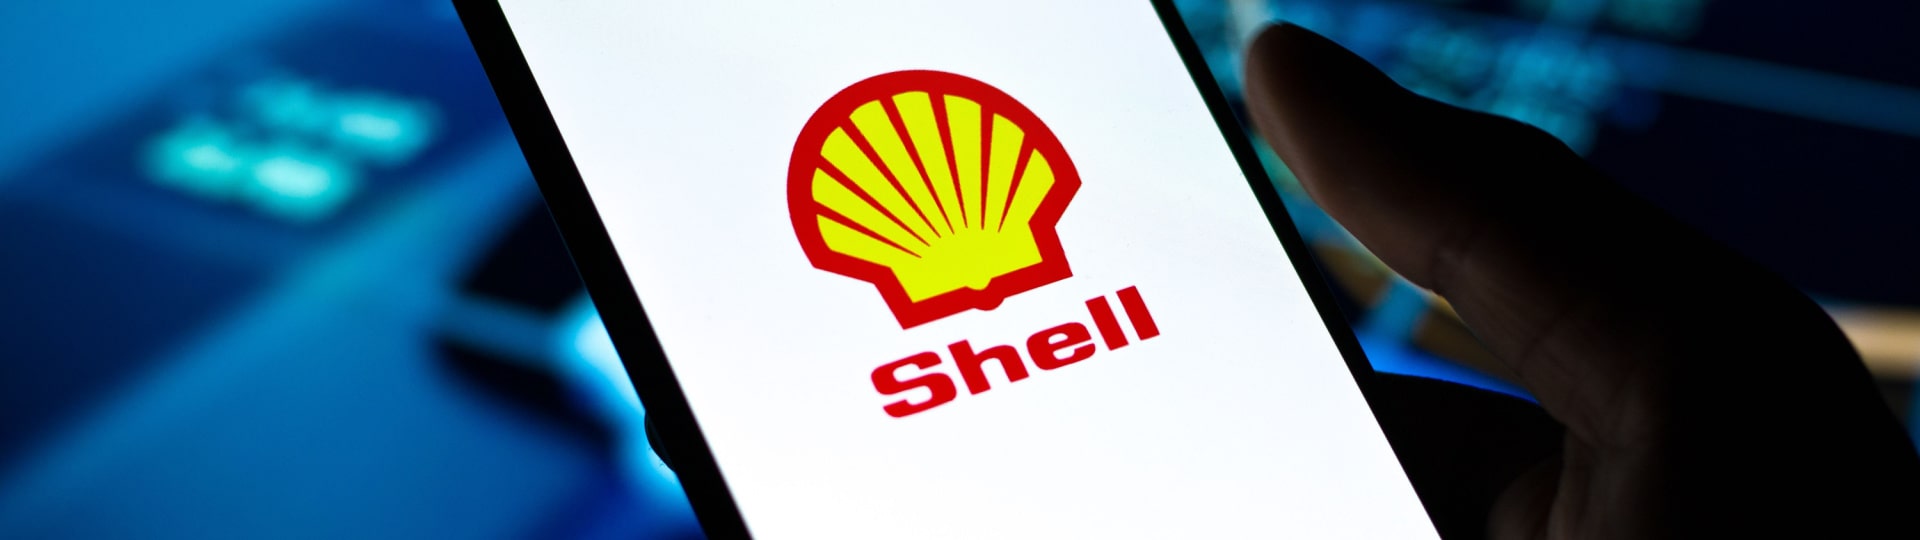 Čtvrtletní zisk ropné společnosti Shell překonal očekávání